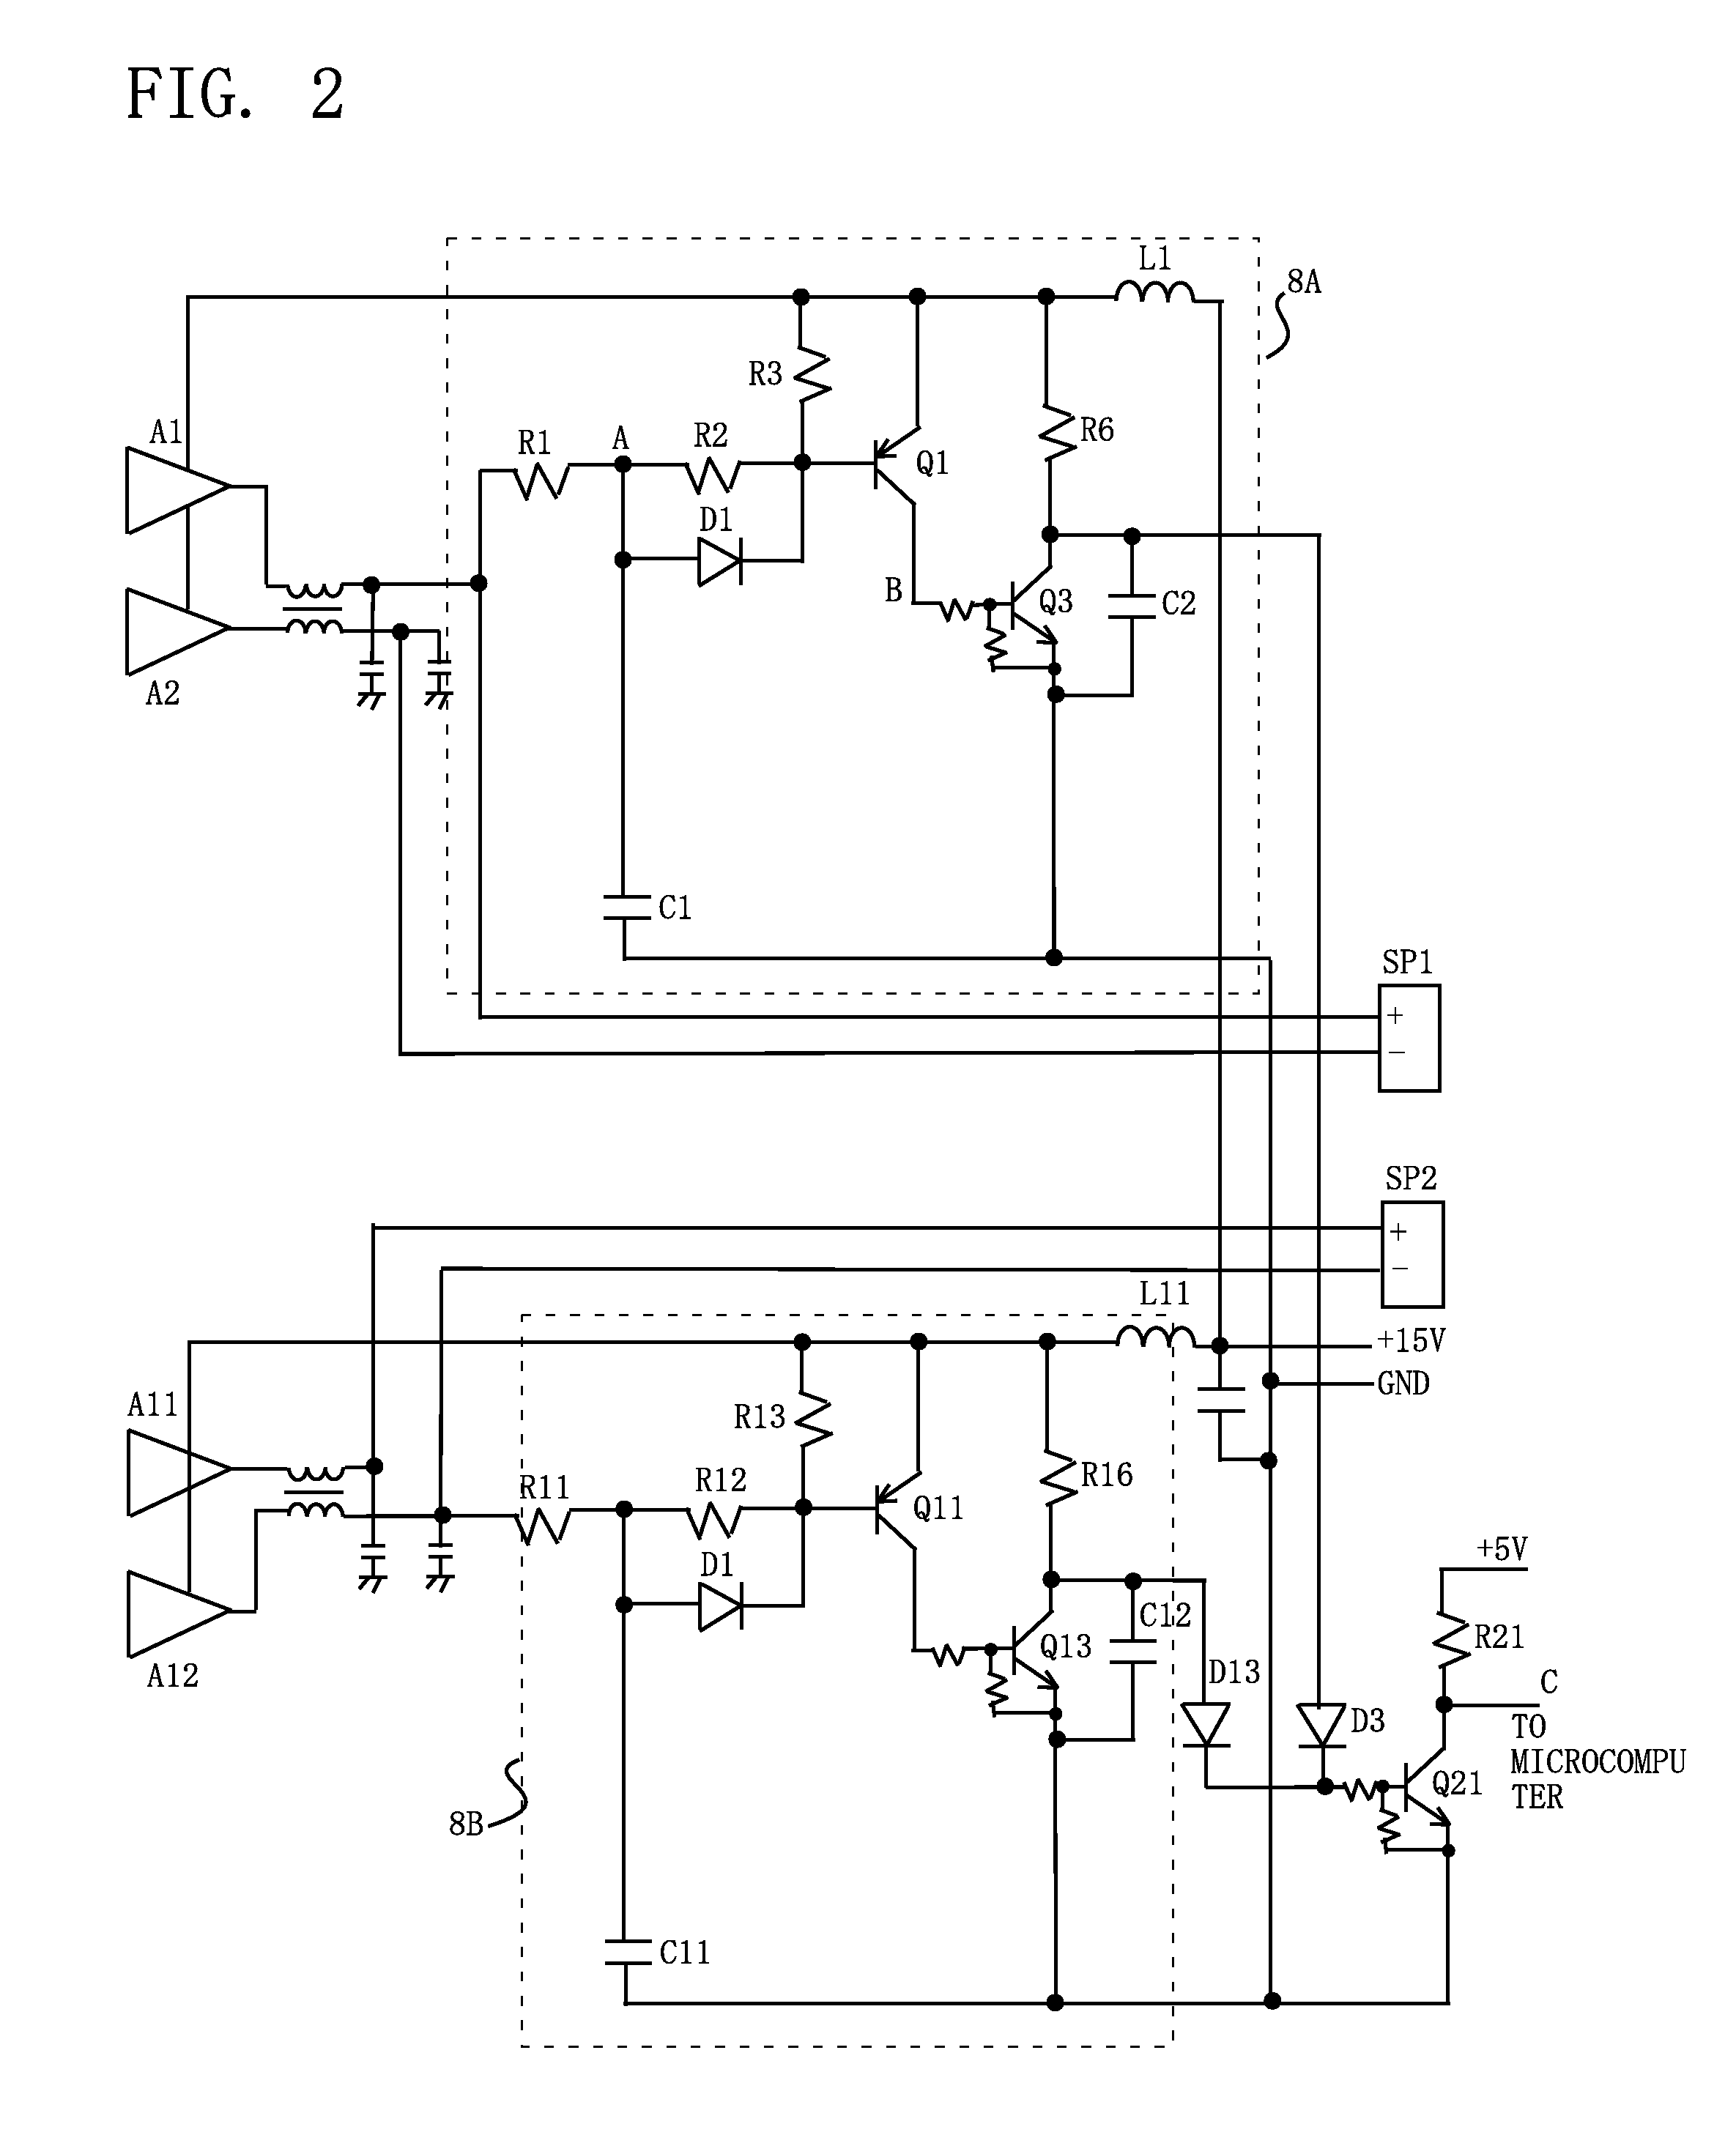 Volume control apparatus